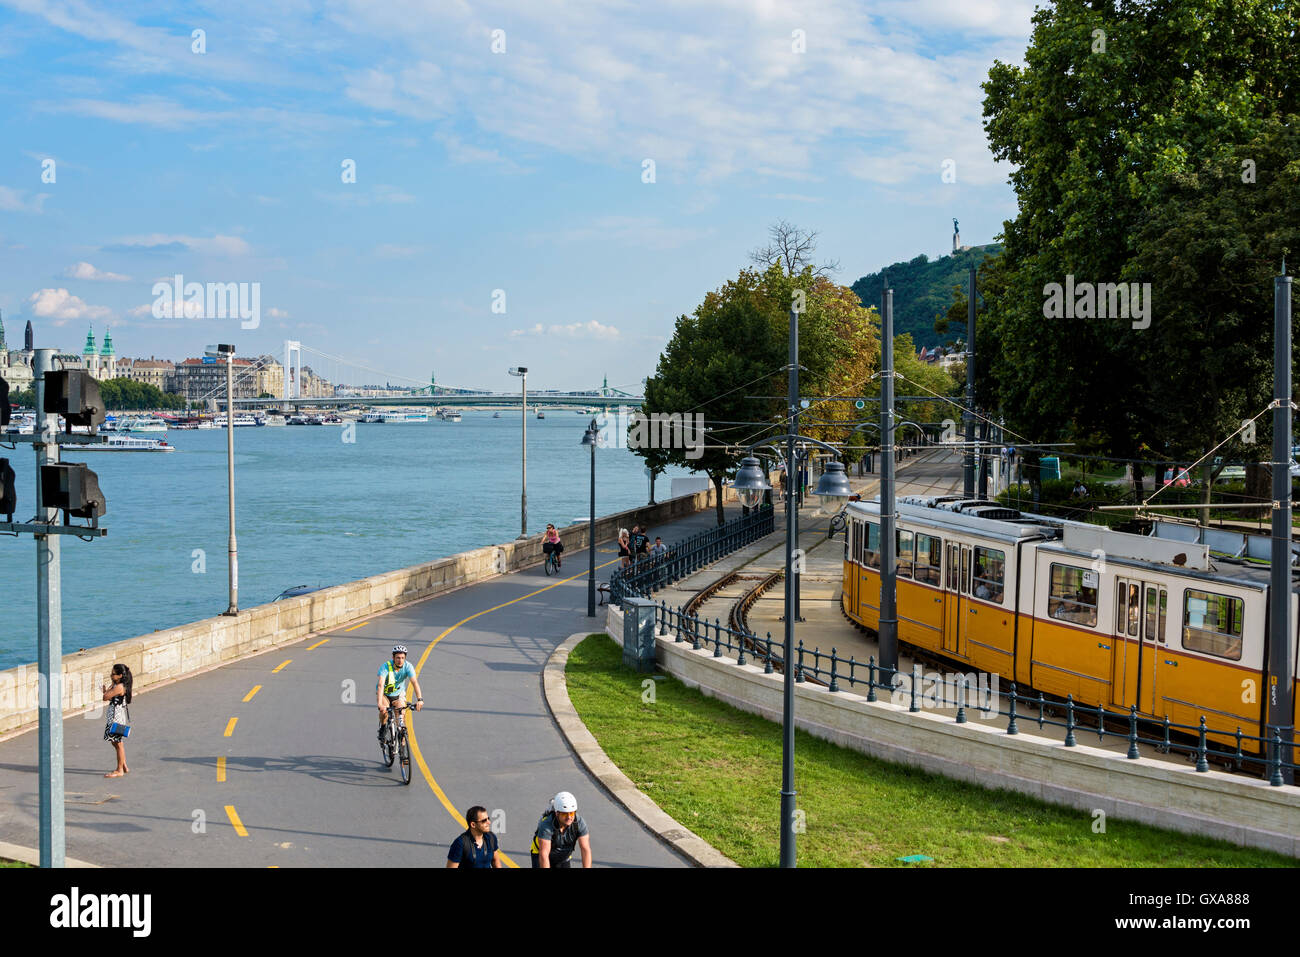 Tram alongside the river Danube. Stock Photo